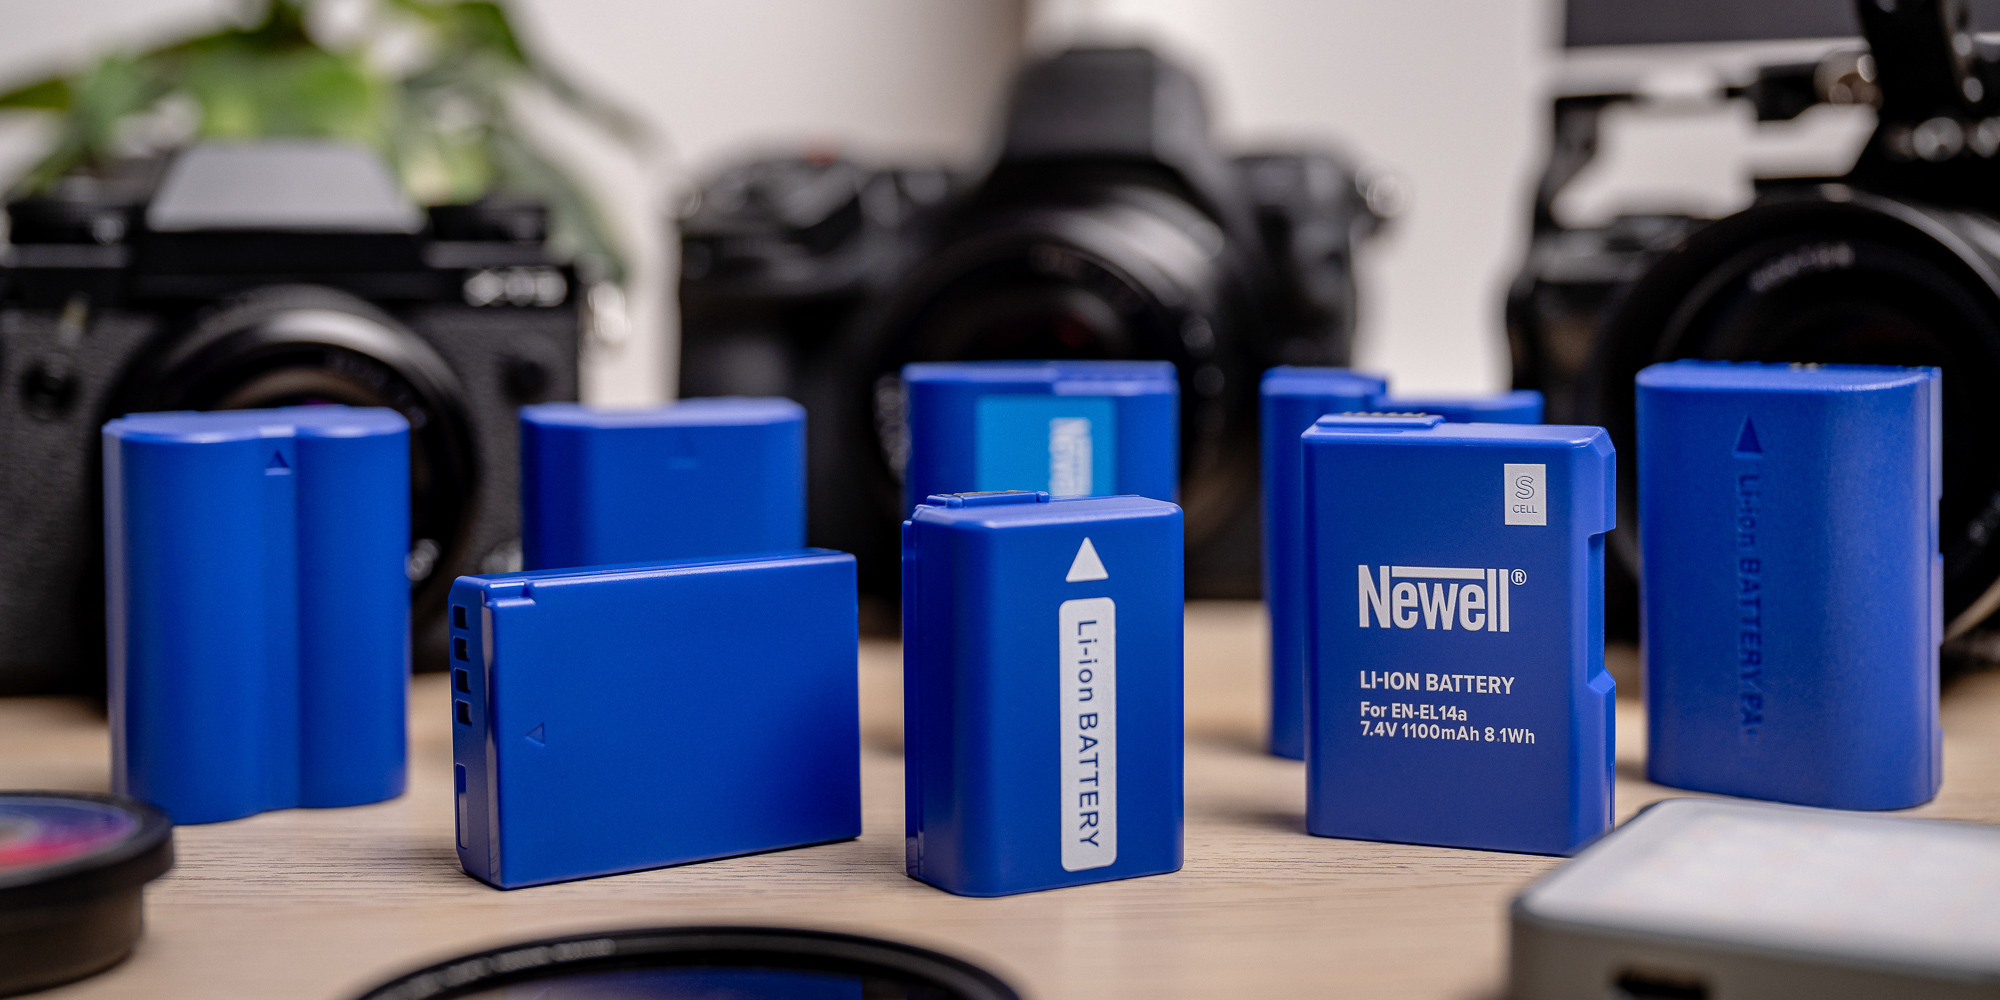 Akumulator zastępczy Newell SupraCell Protect NP-FW50 do Sony